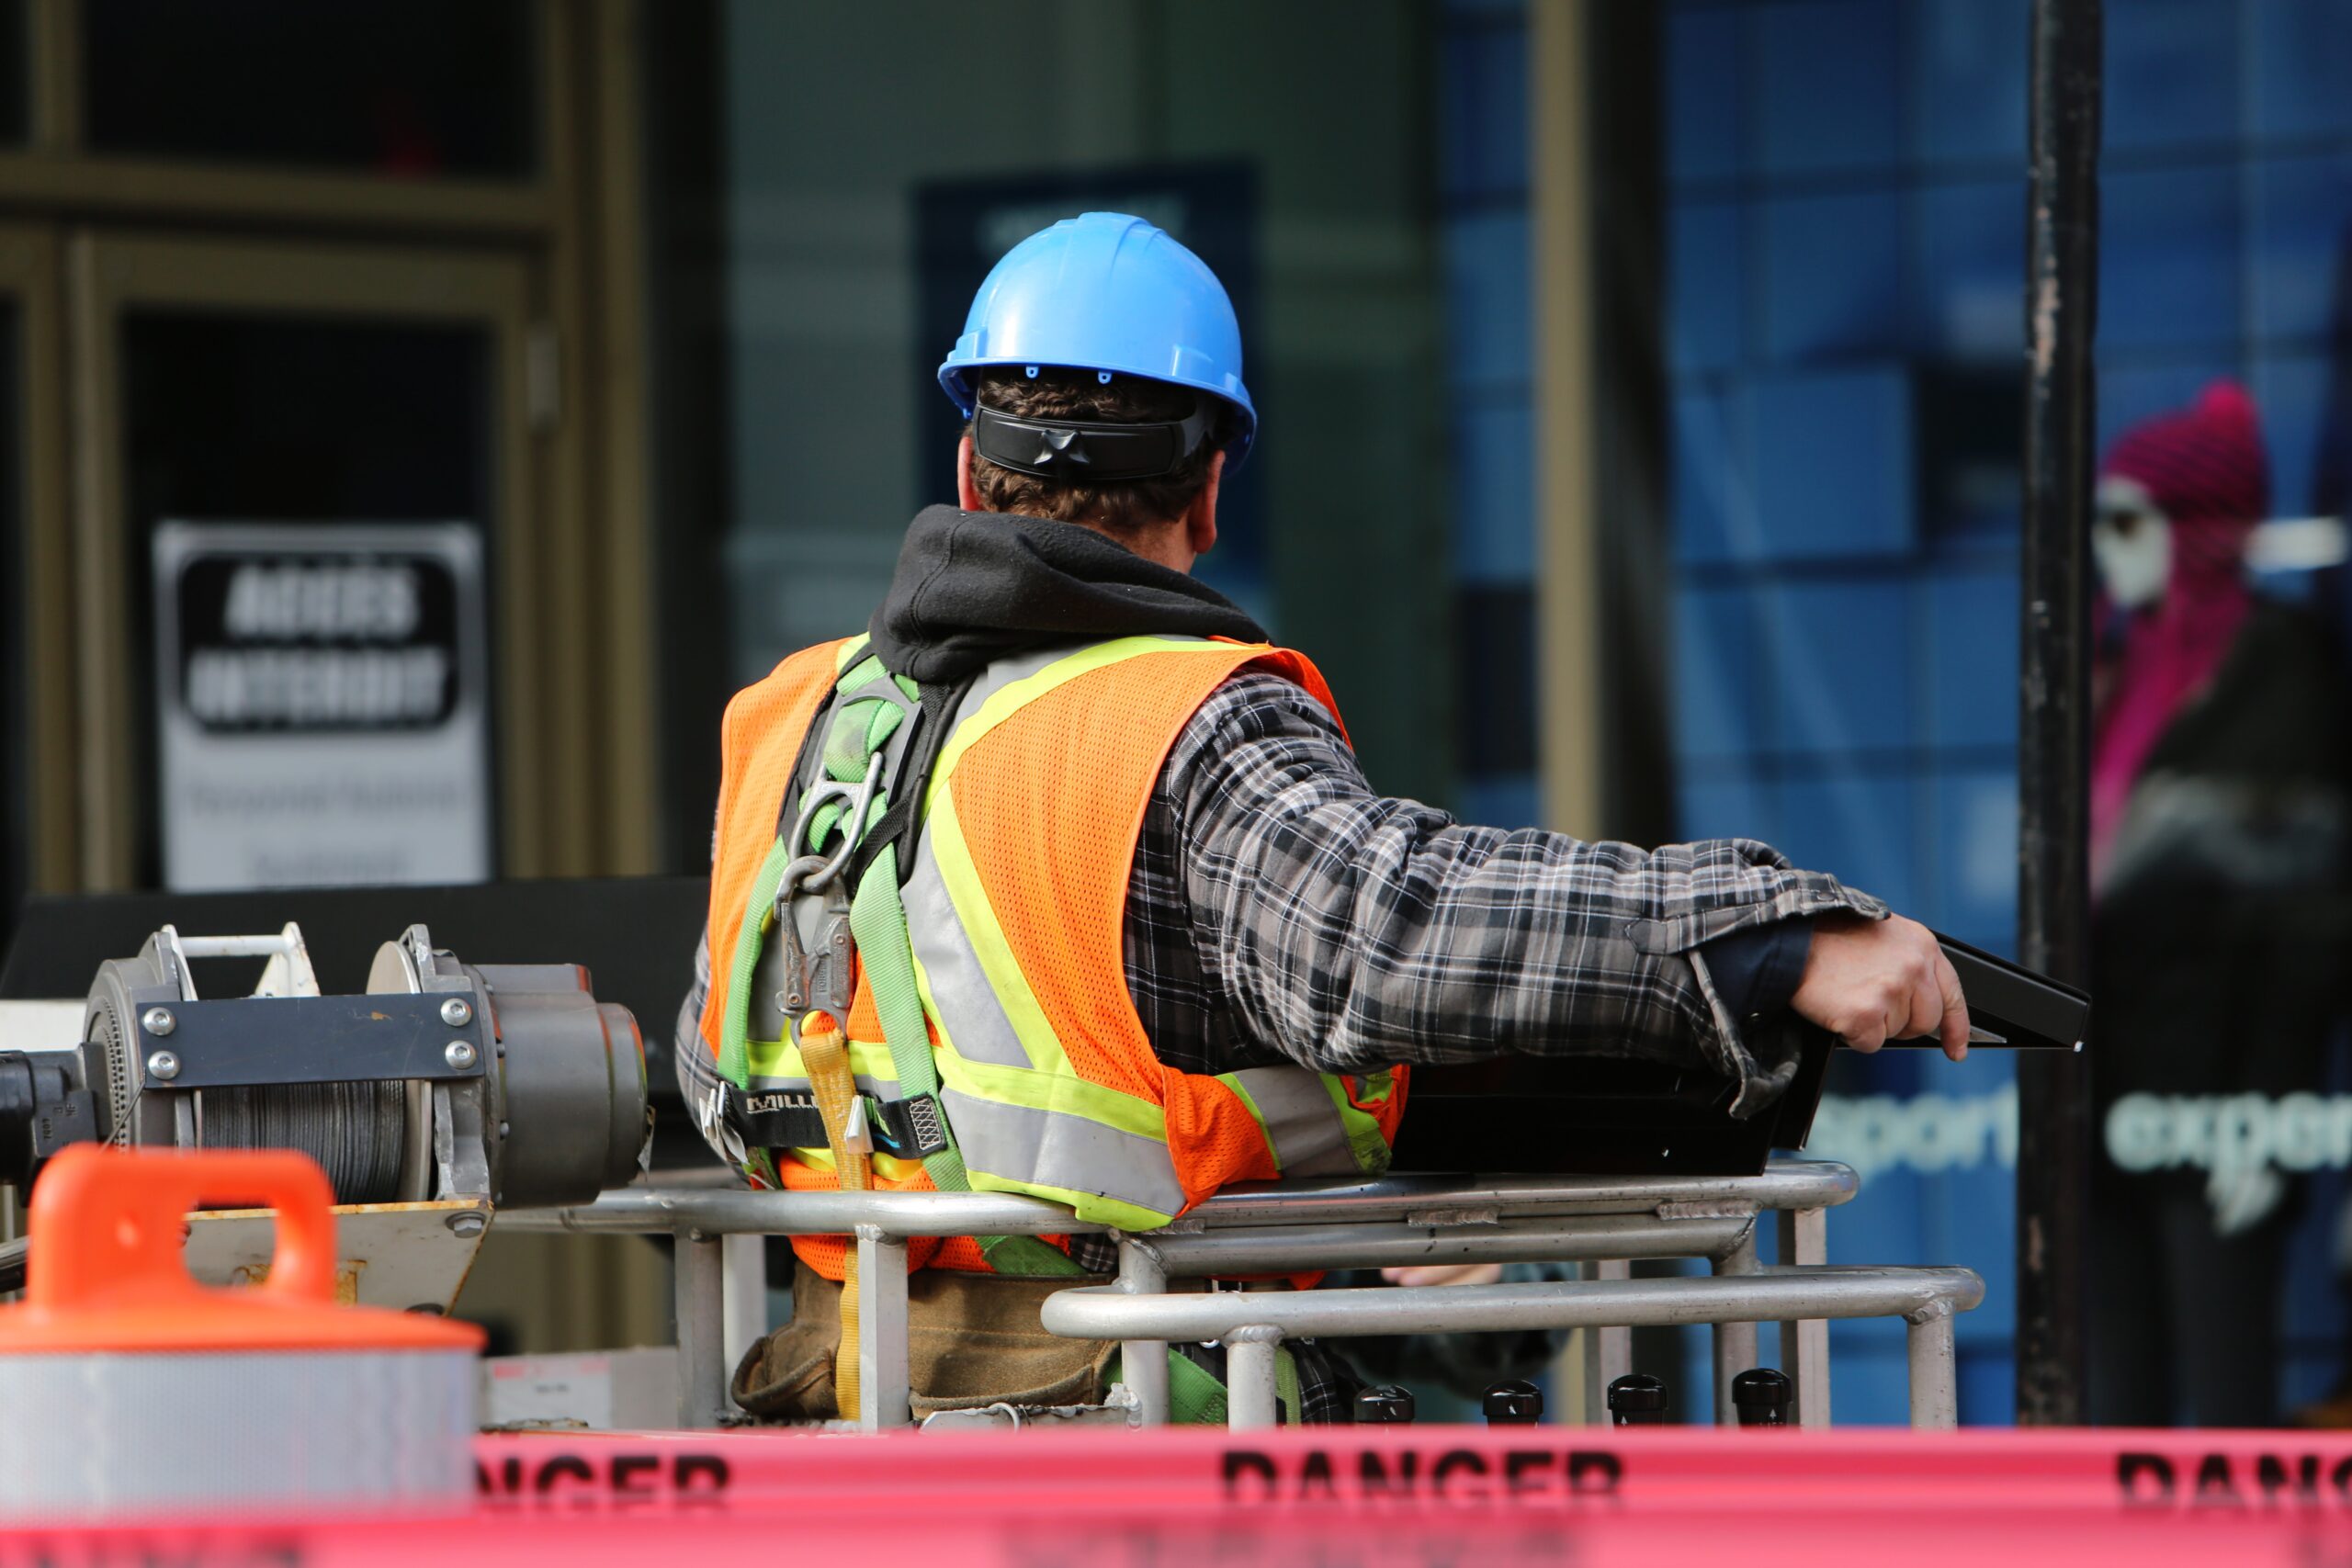 Varför arbetskläder är så viktigt på en byggarbetsplats